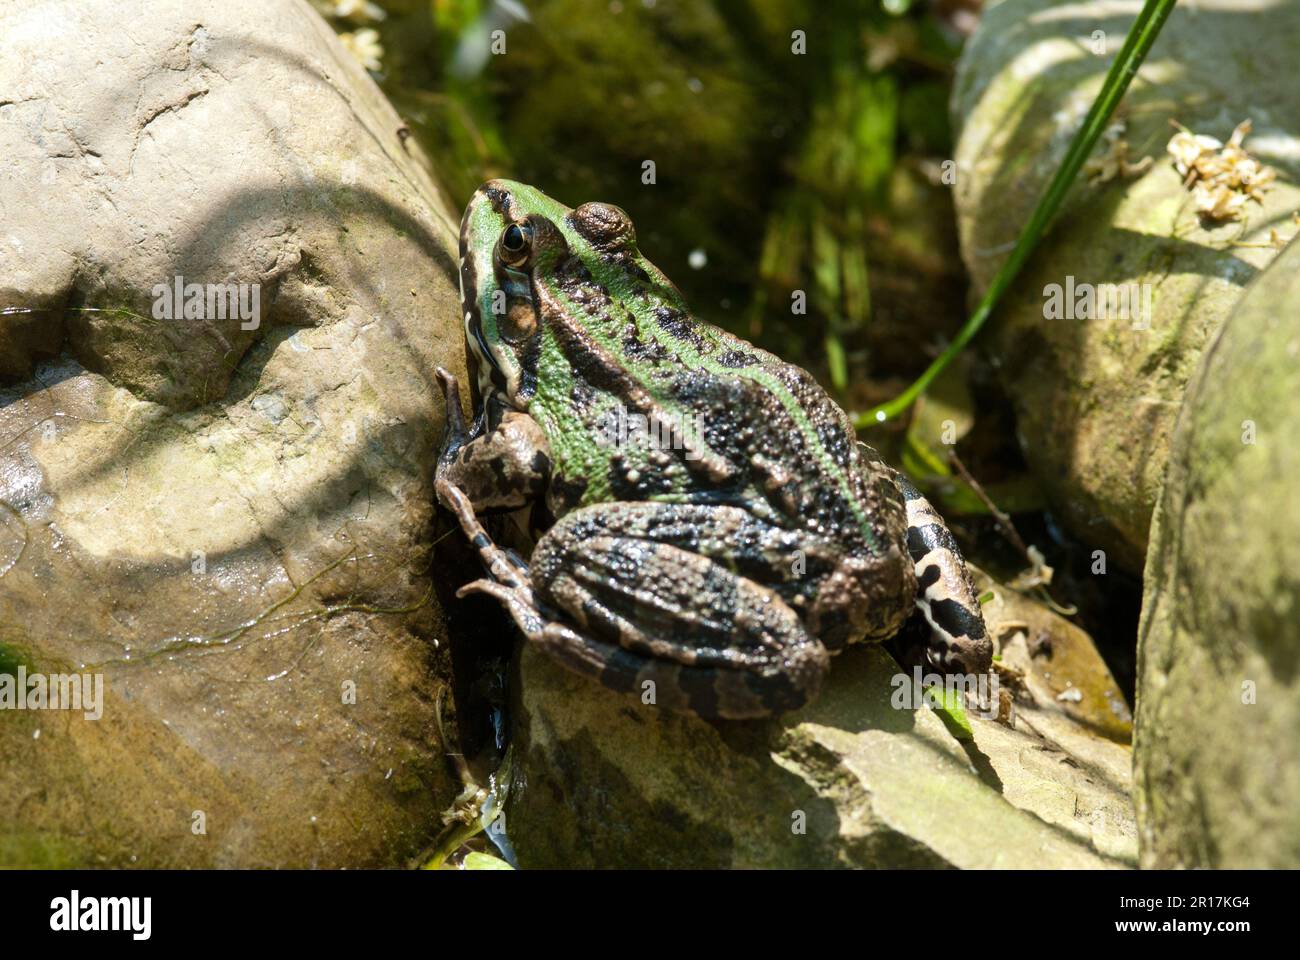 La rana commestibile (Pelophylax kl. Esculentus) è una specie di rana comune europea, nota anche come rana comune o rana verde Foto Stock